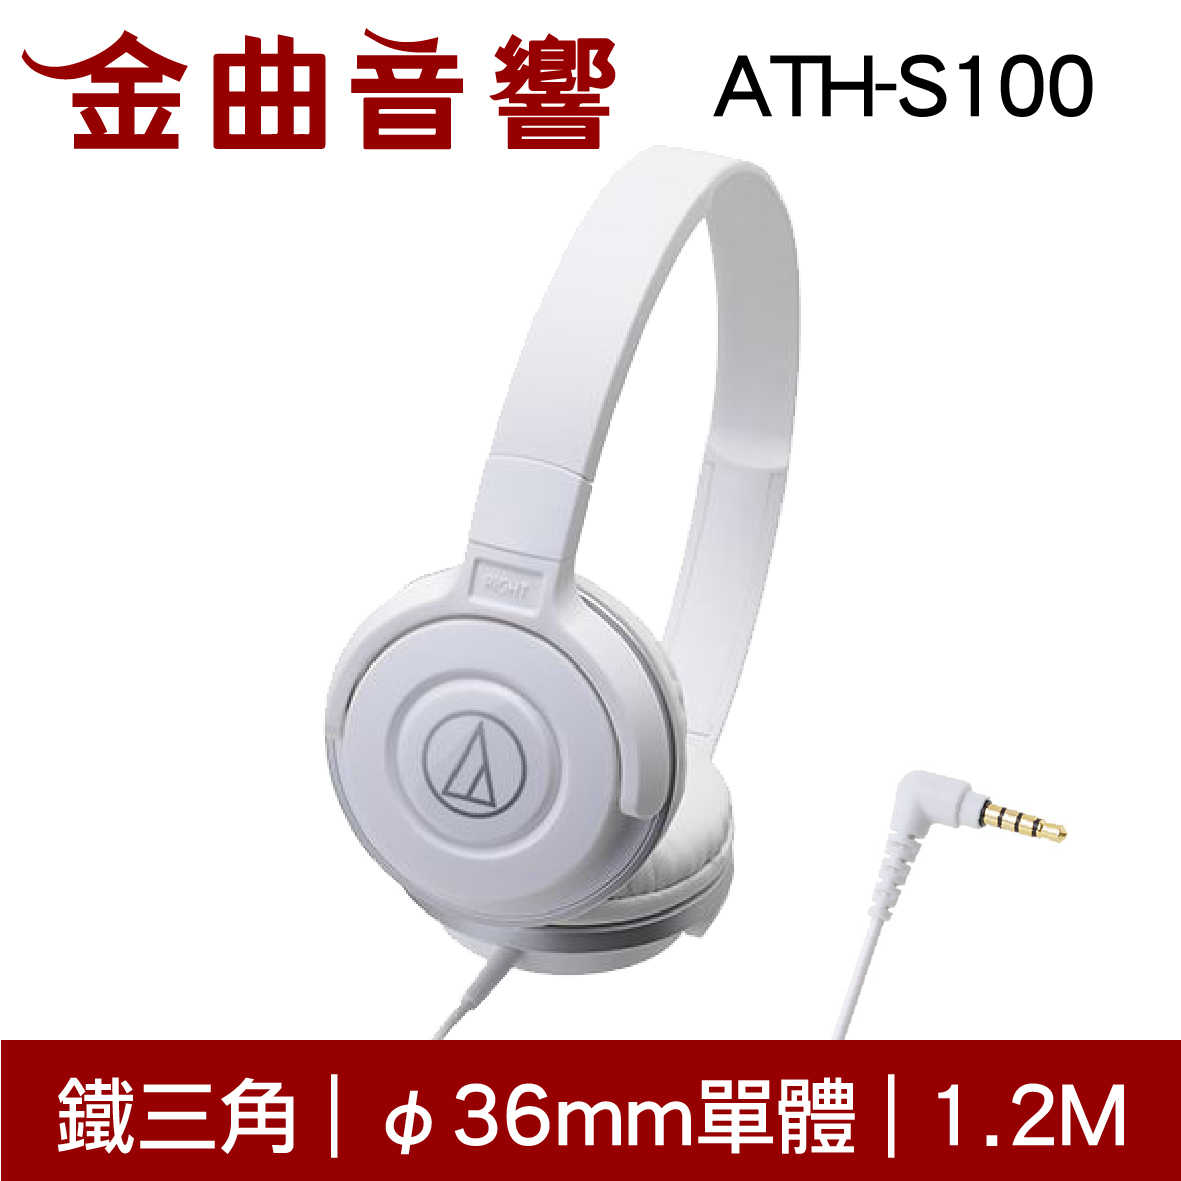 鐵三角 ATH-S100 白色 兒童耳機 大人 皆適用 耳罩式耳機 無麥克風版 | 金曲音響